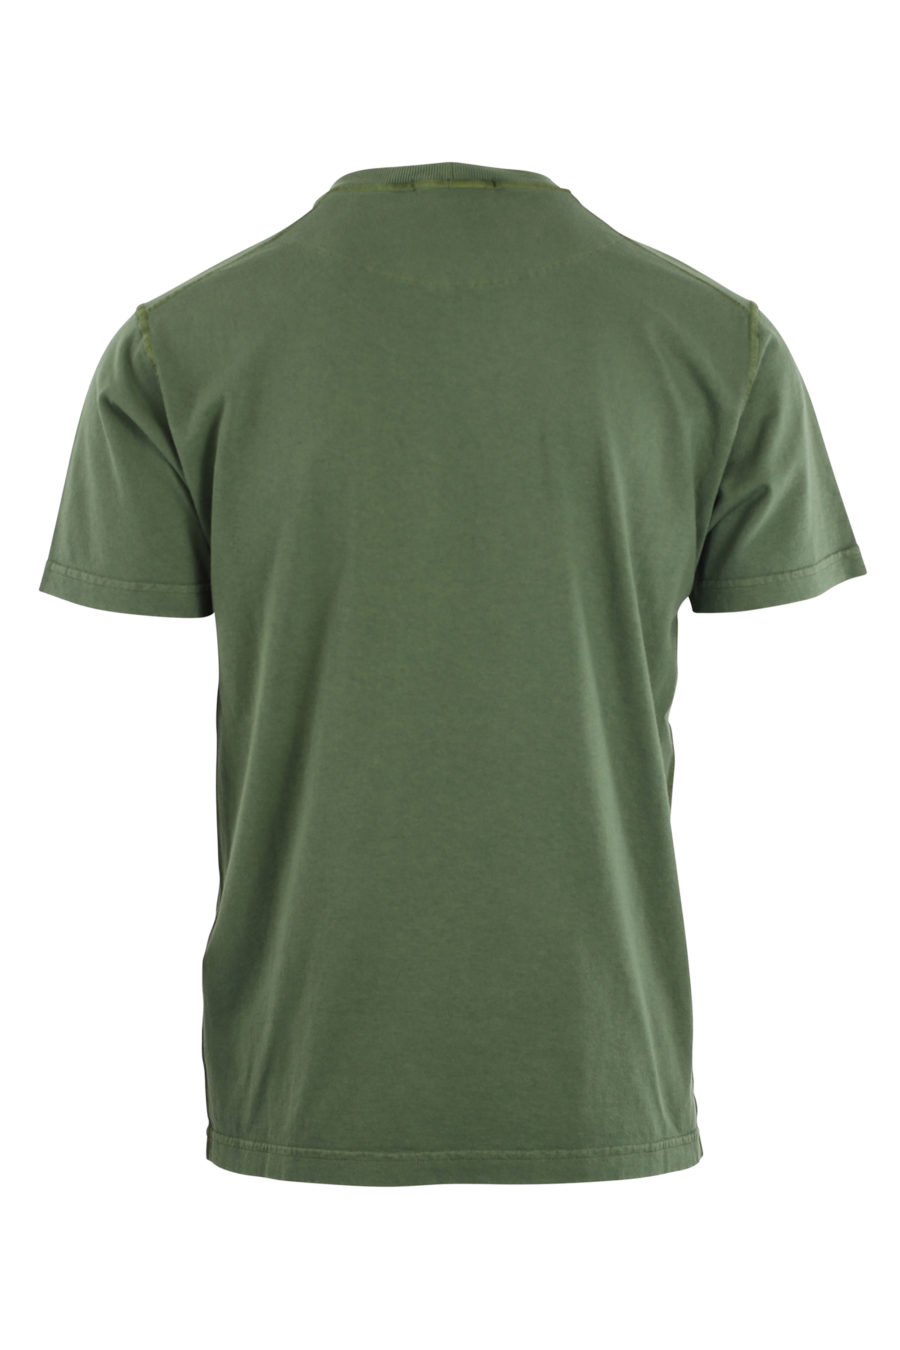 Camiseta verde militar con logo parche - IMG 9692